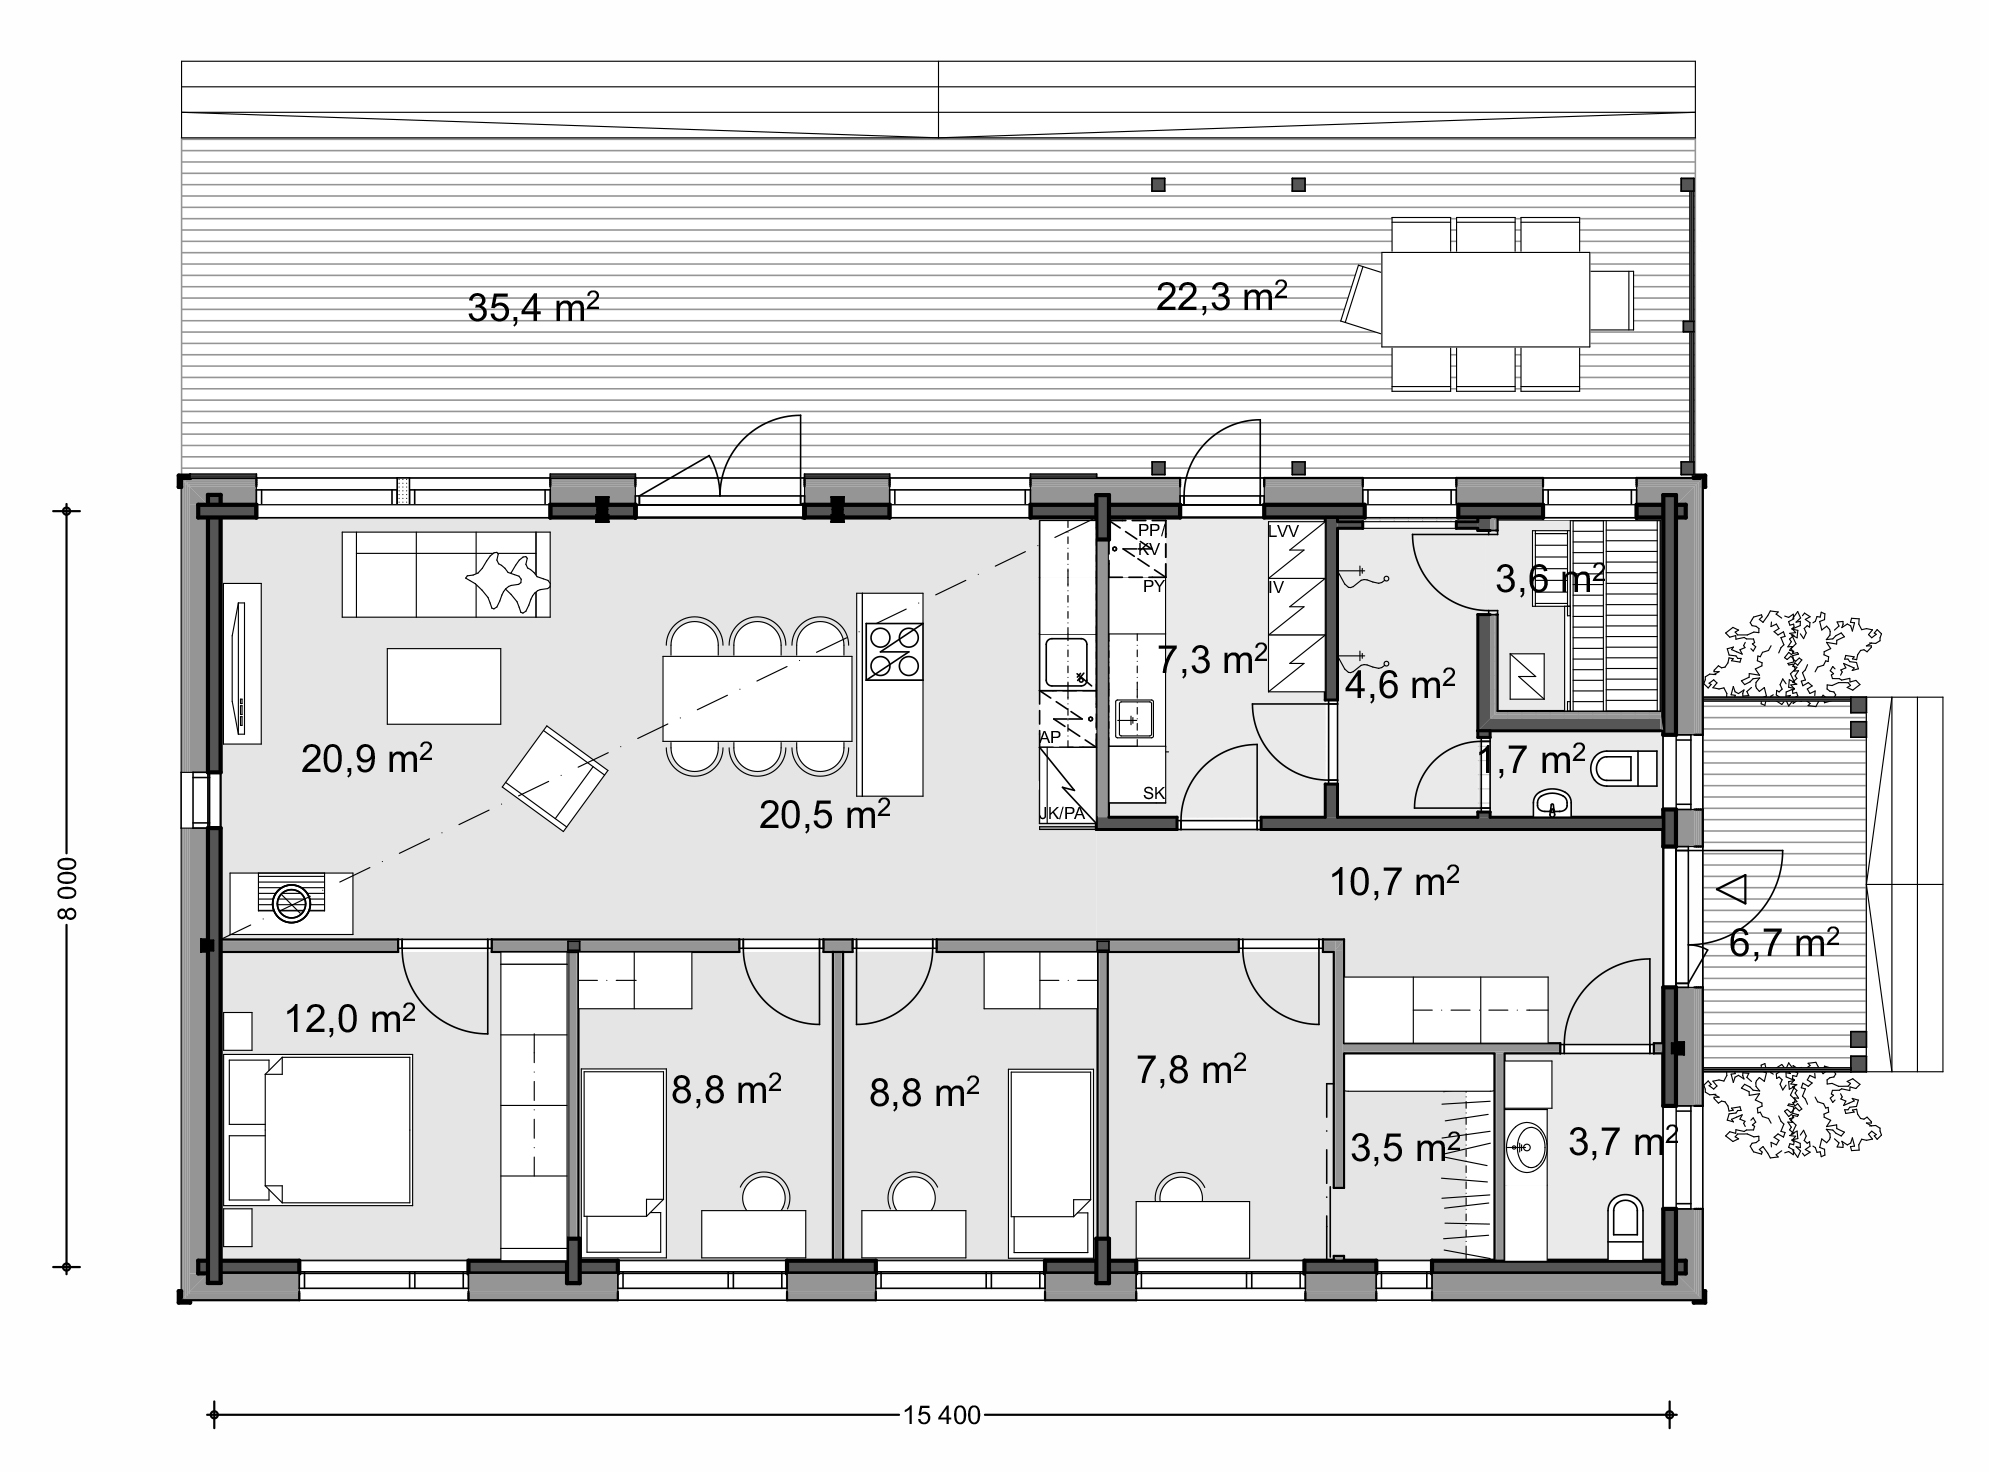 Планировки домов 6 на 8: зонирование пространства и варианты типовых решений